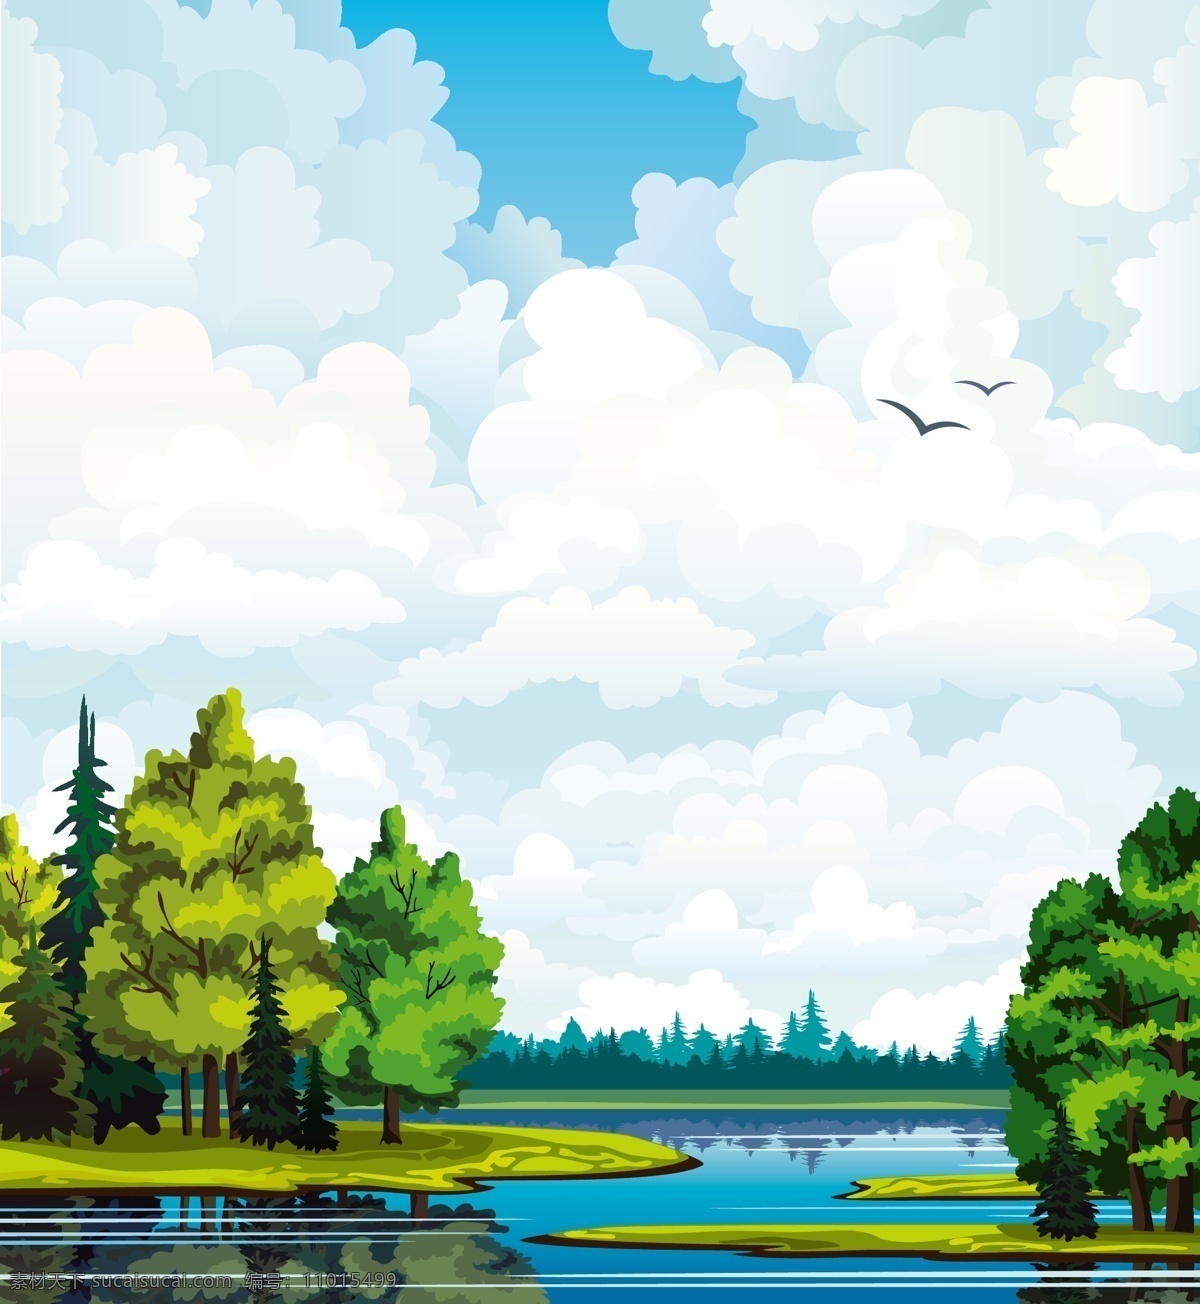 卡通 森林 湖泊 风光 倒影 风景 河流 鸟 矢量图 树木 夕阳 云朵 自然景观 其他矢量图